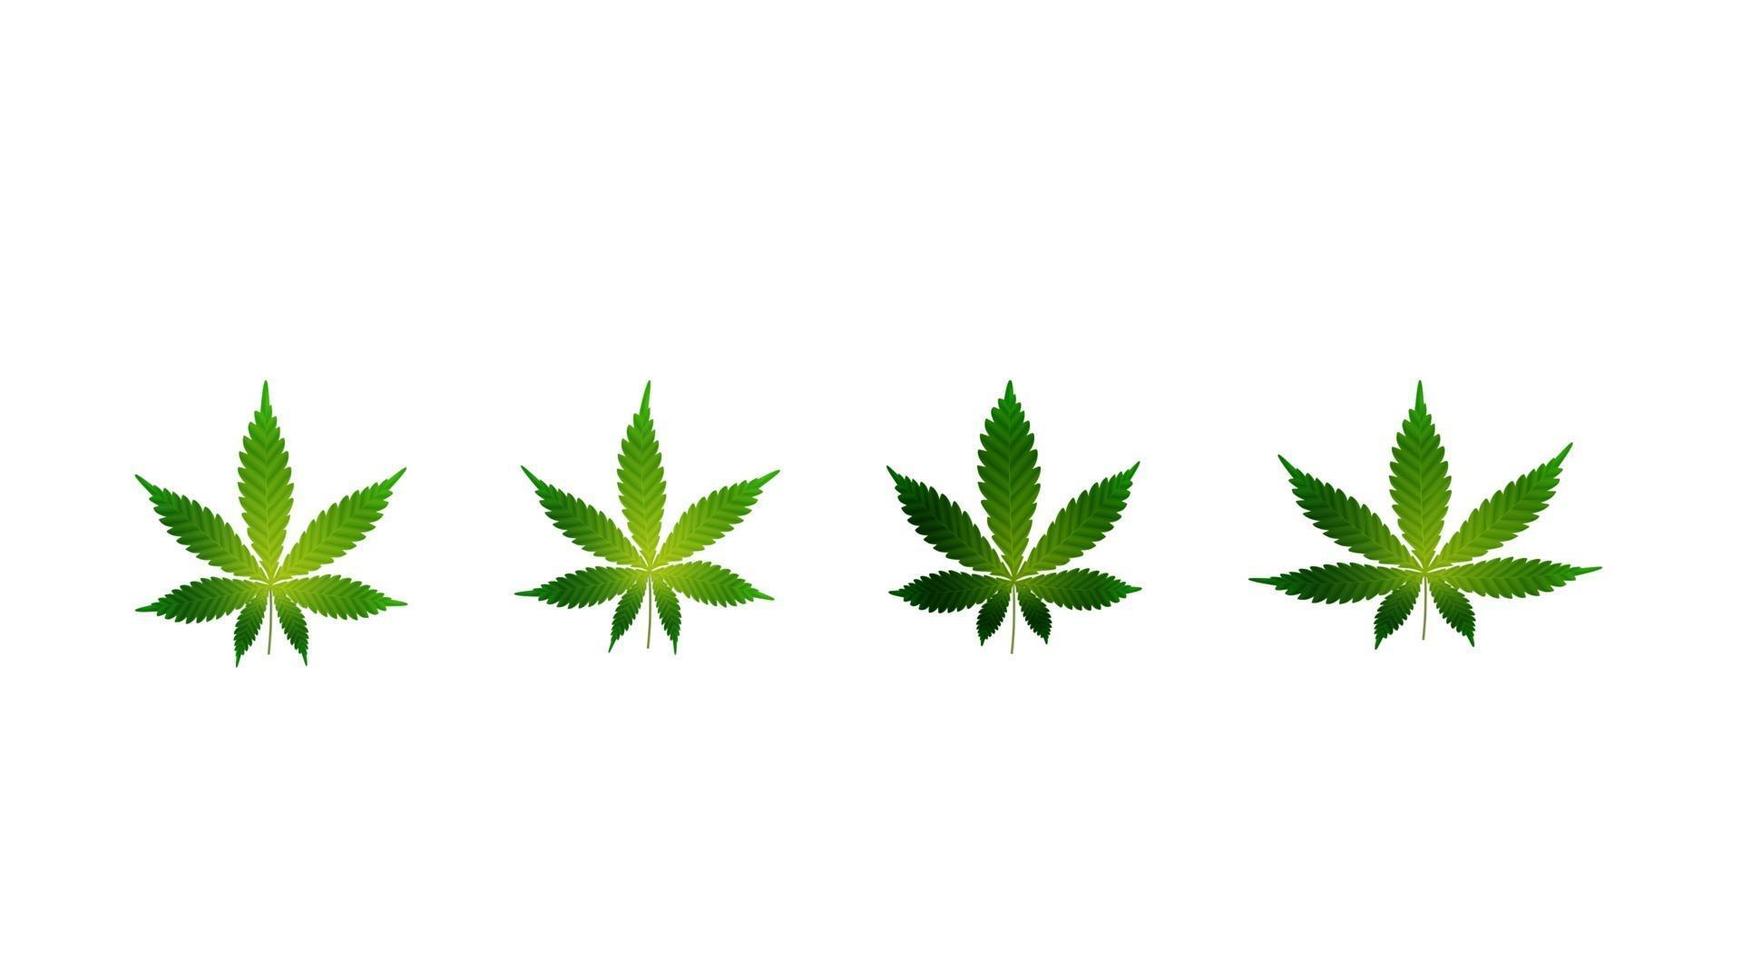 grüne Blätter von Cannabis. Set von Cannabisblättern isoliert auf weißem Hintergrund vektor